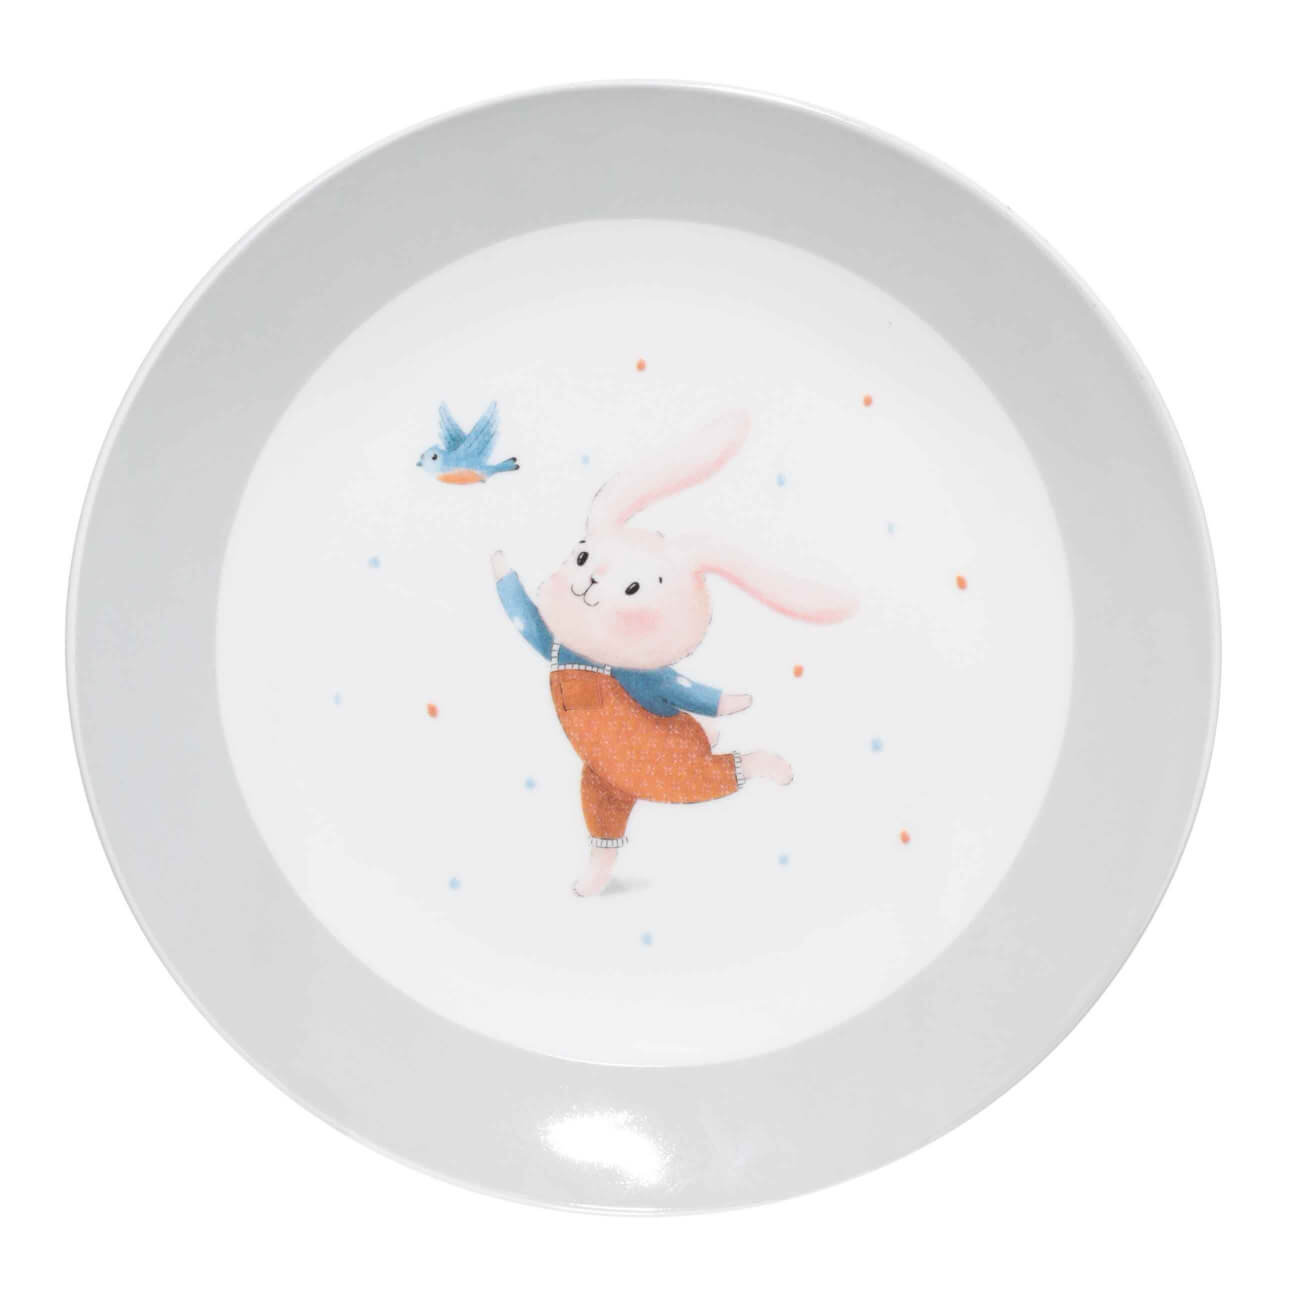 Тарелка закусочная, детская, 19 см, фарфор N, бело-серая, Кролик с птицей, Ideas life тарелка закусочная maxwell